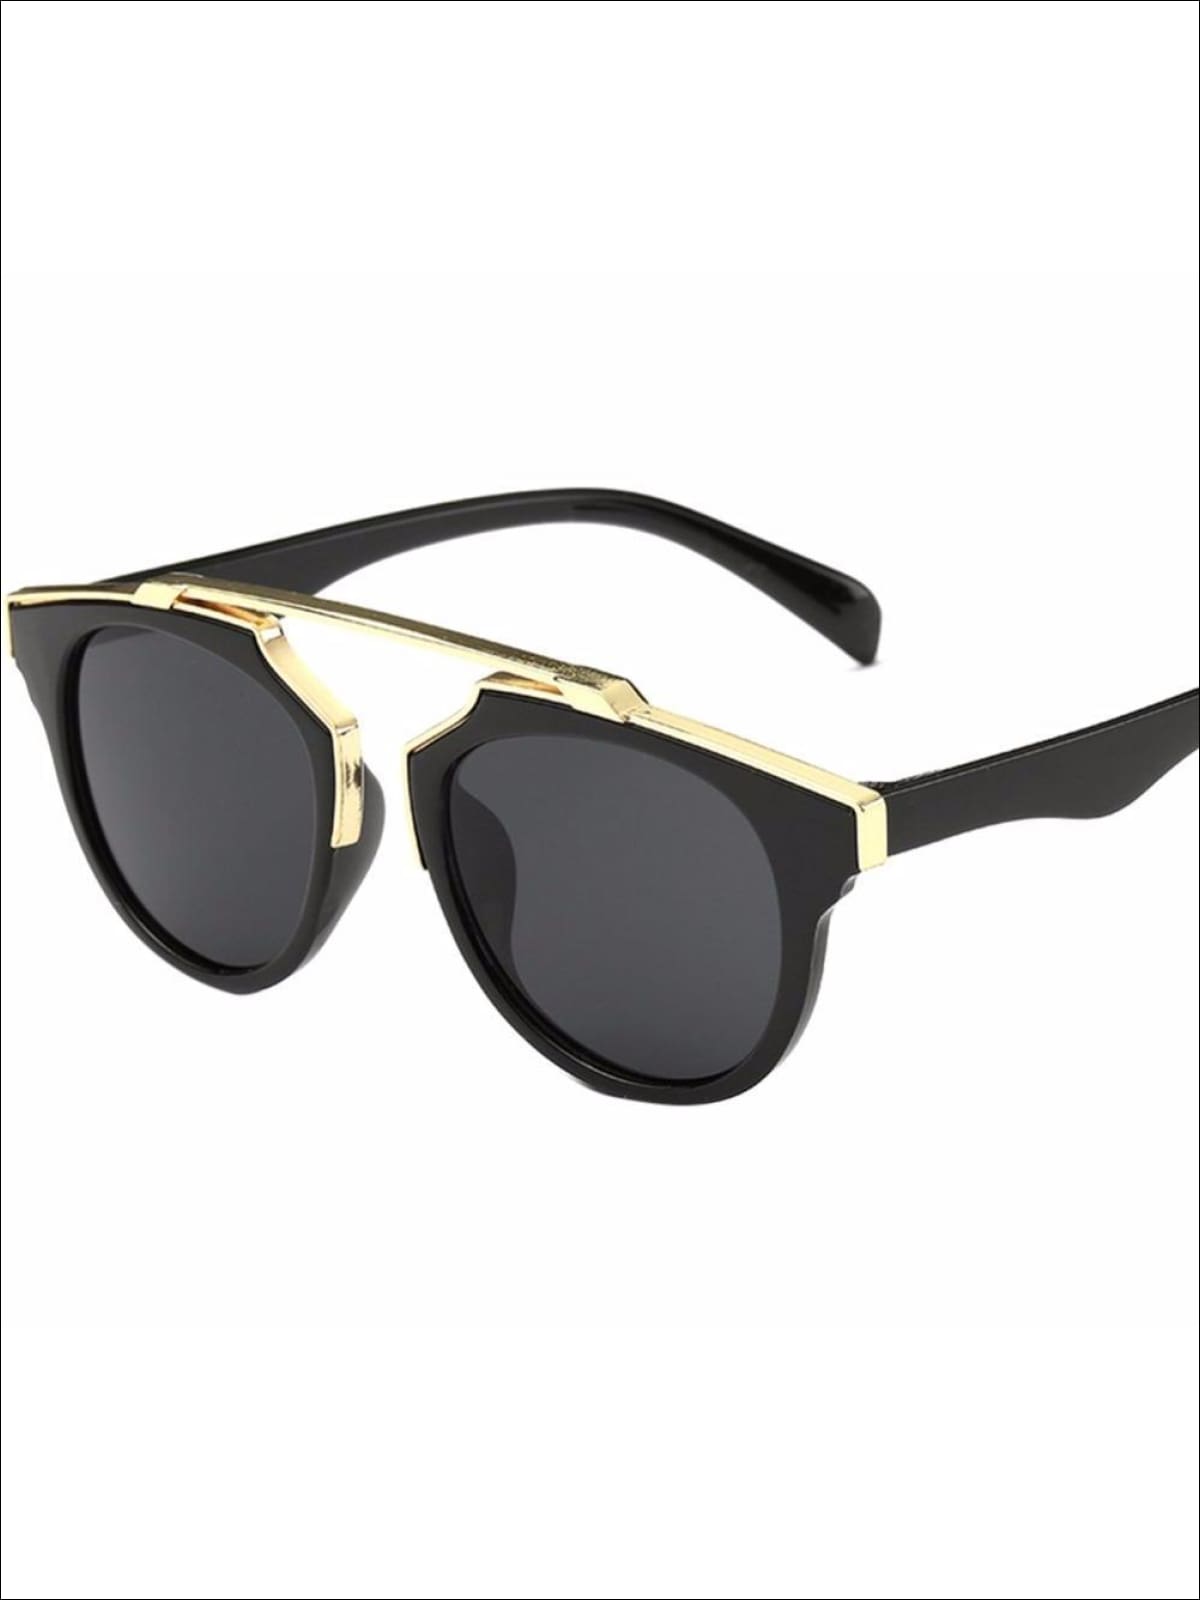 Girls Round Aviator Sunglasses with Gold Detail - Black / One - Girls Sunglasses